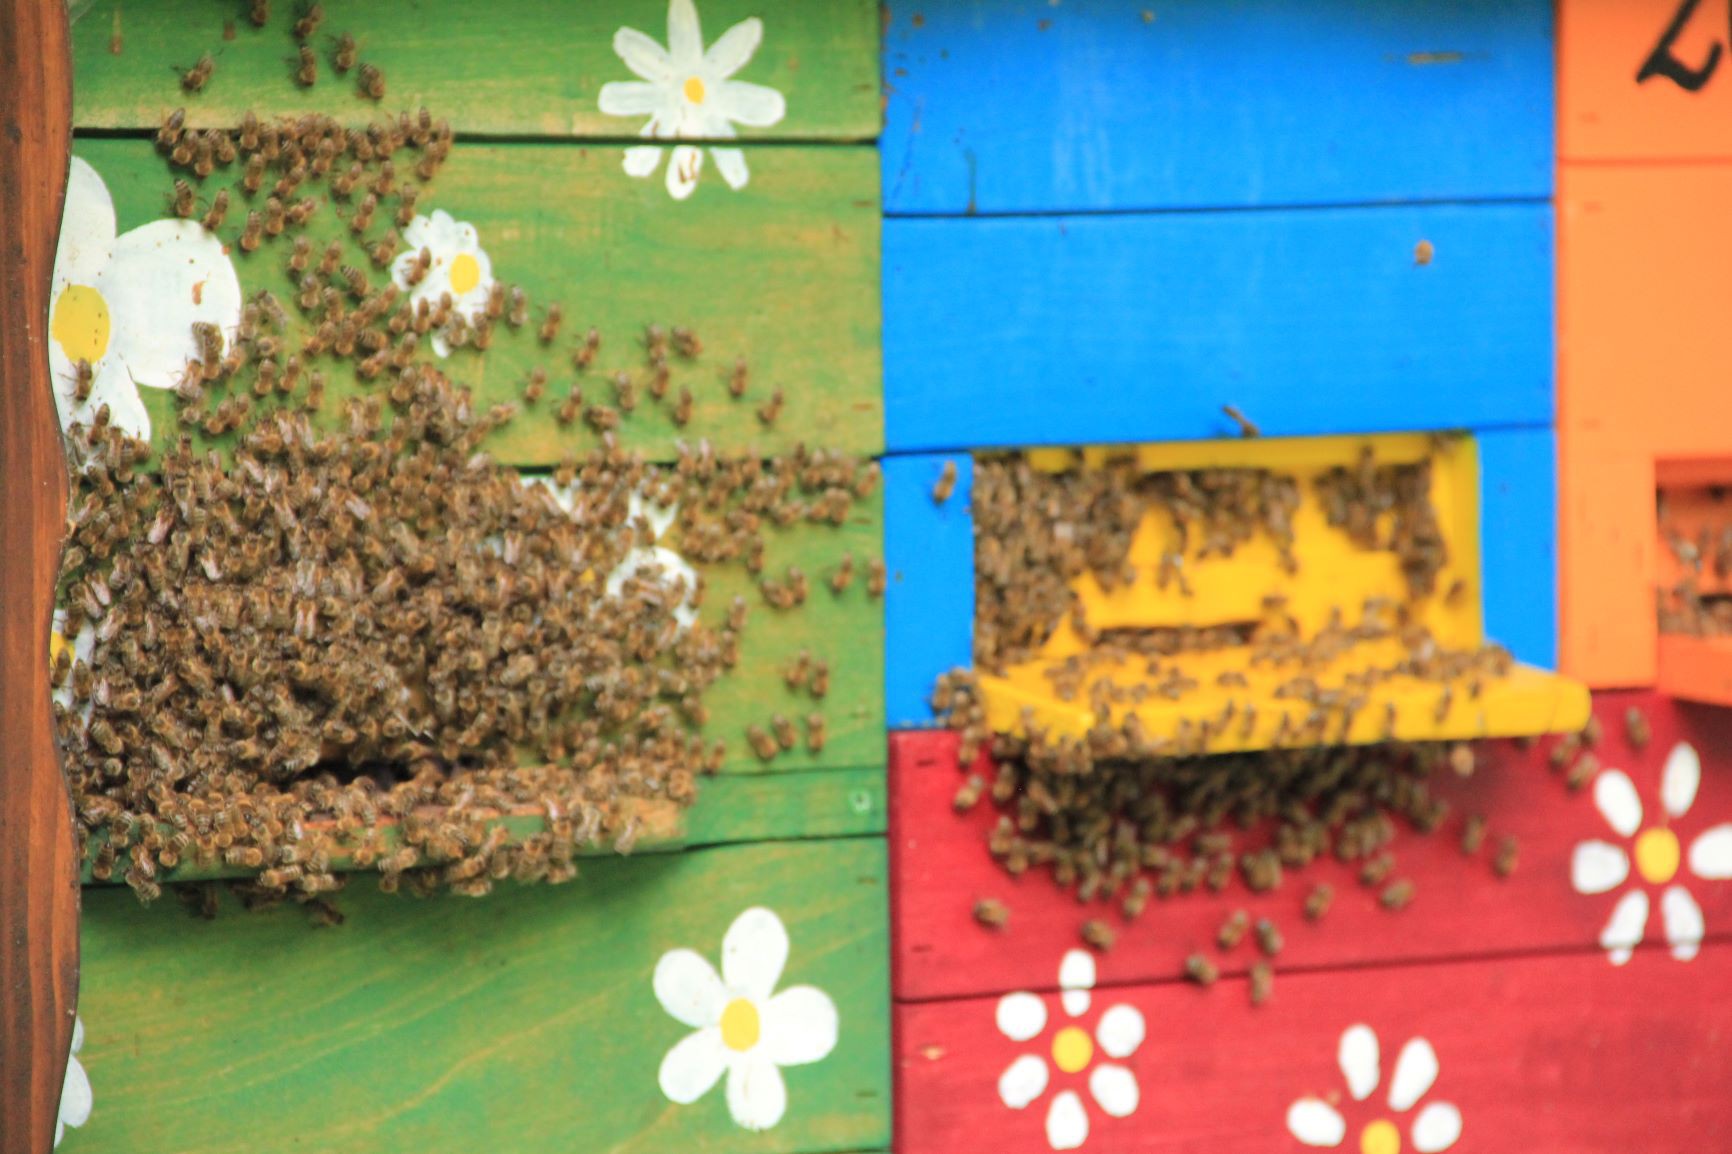 Domžalska čebelarska pot